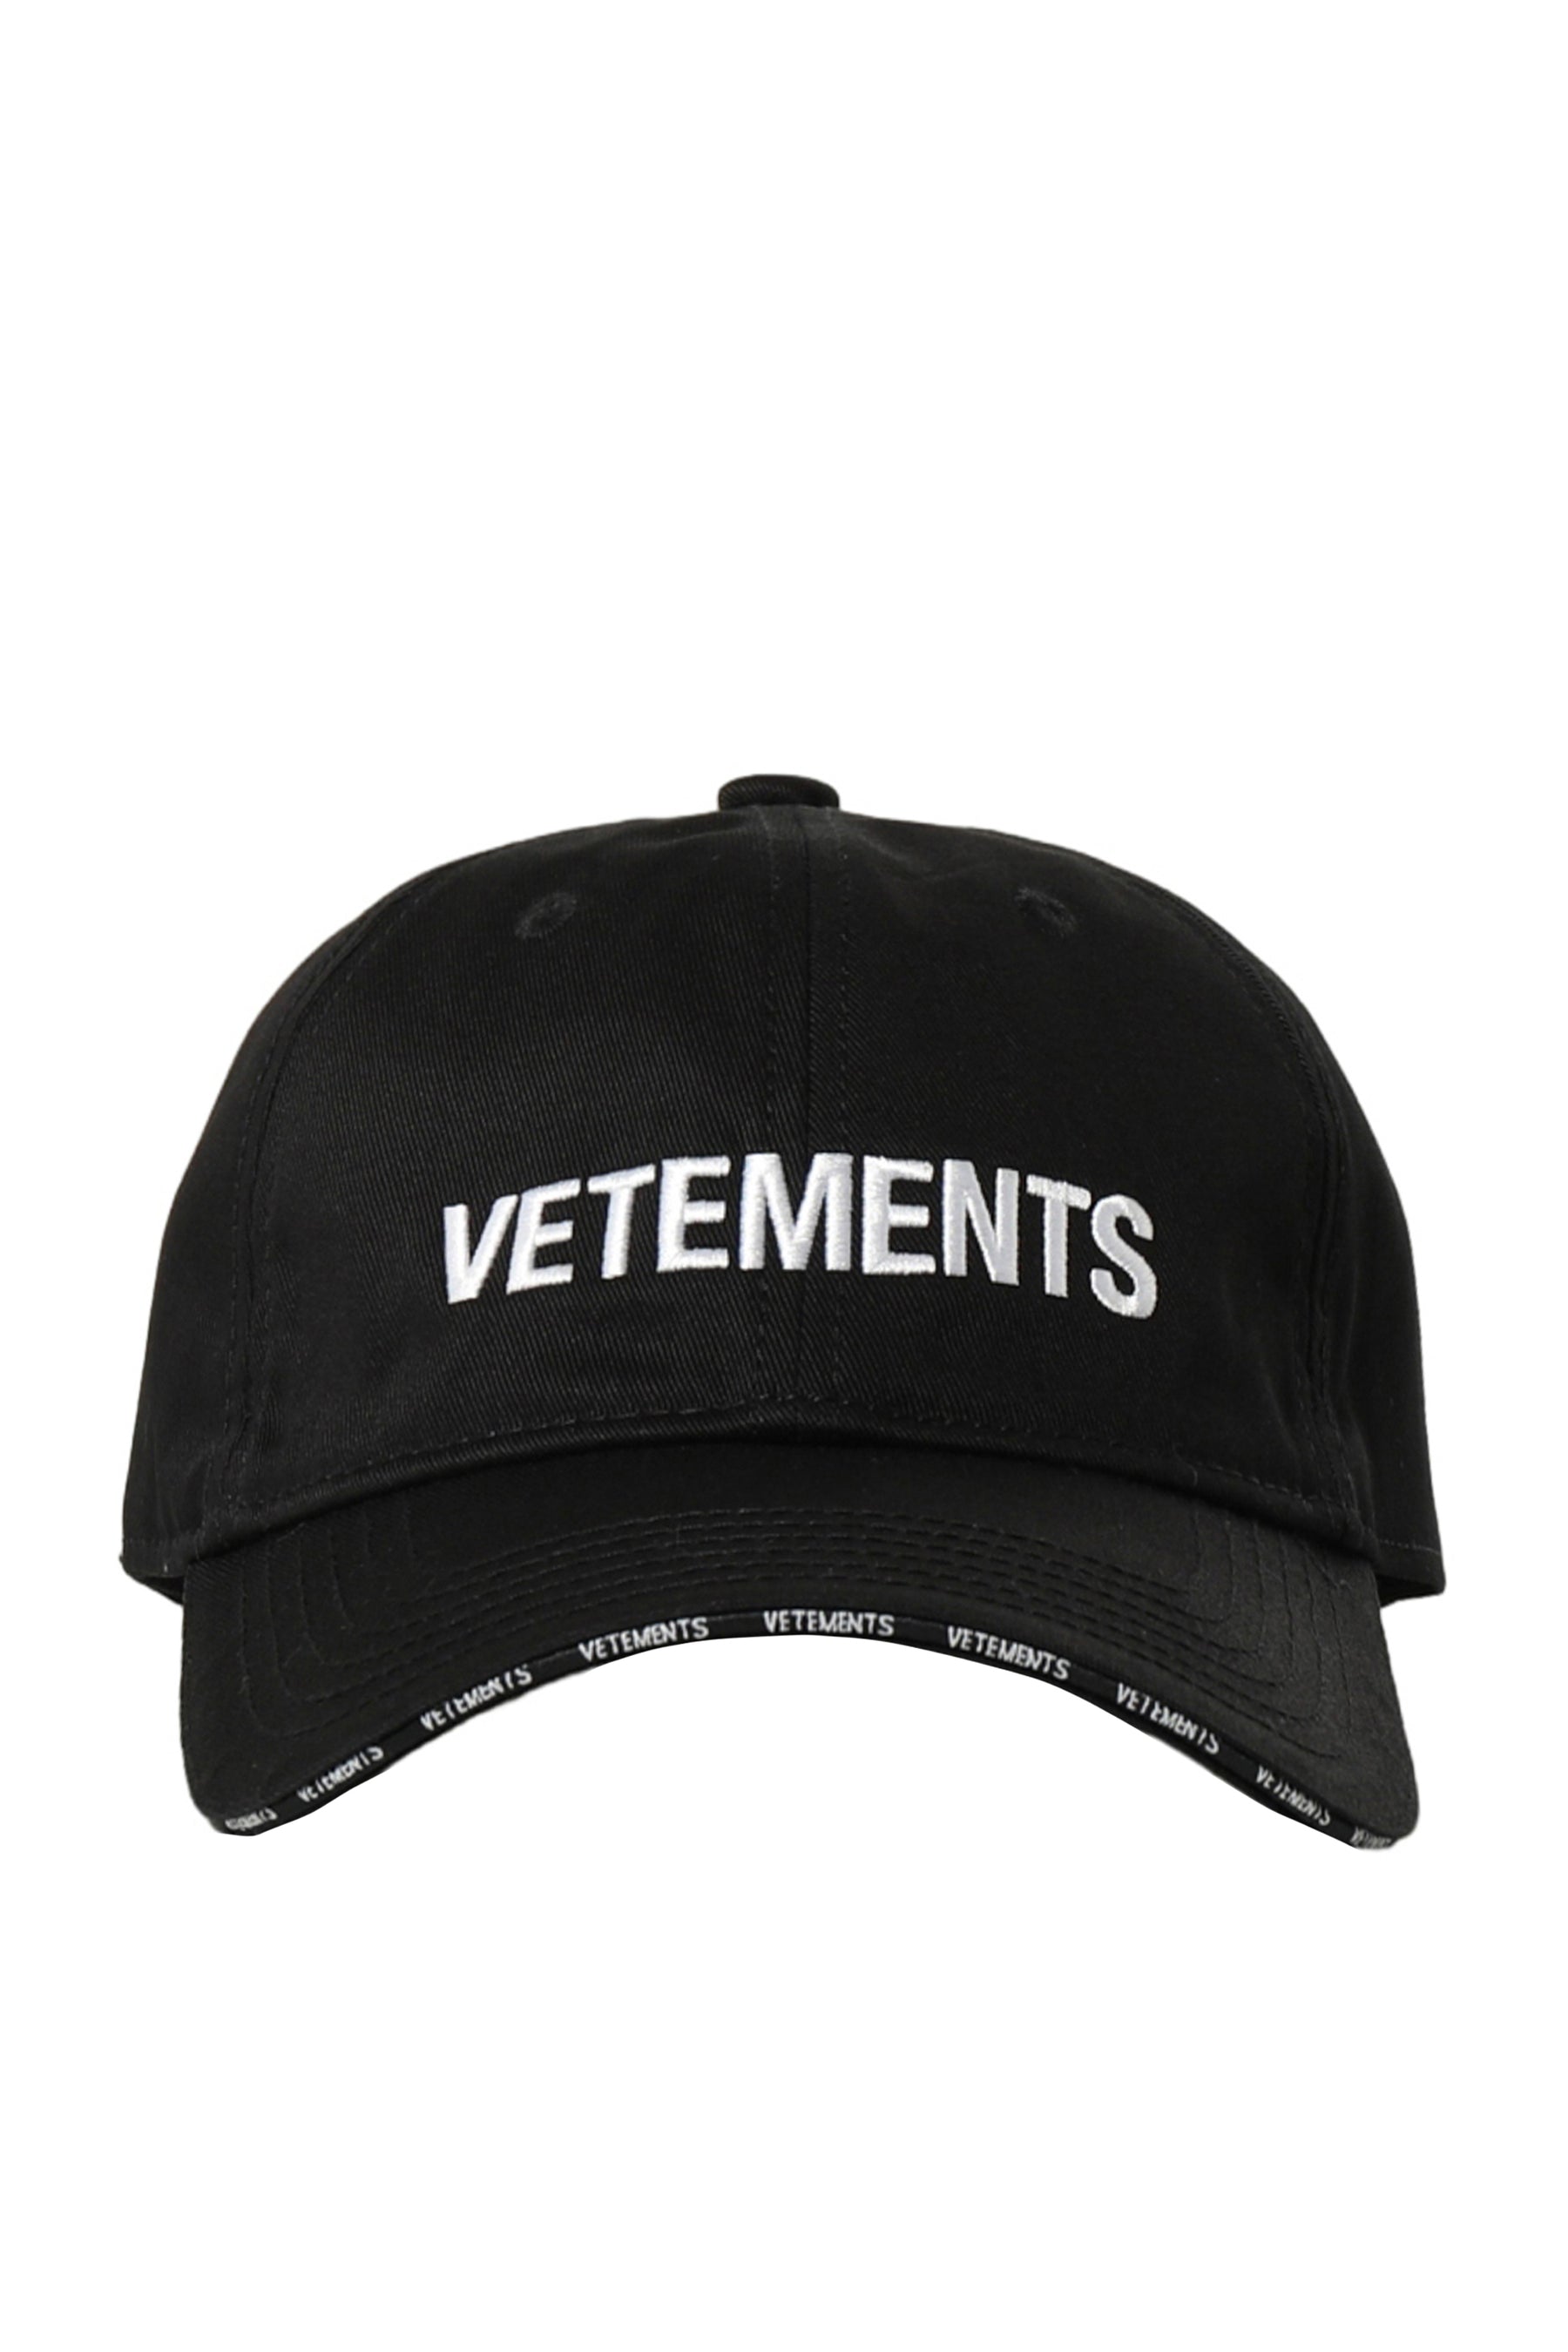 VETEMENTS CAP